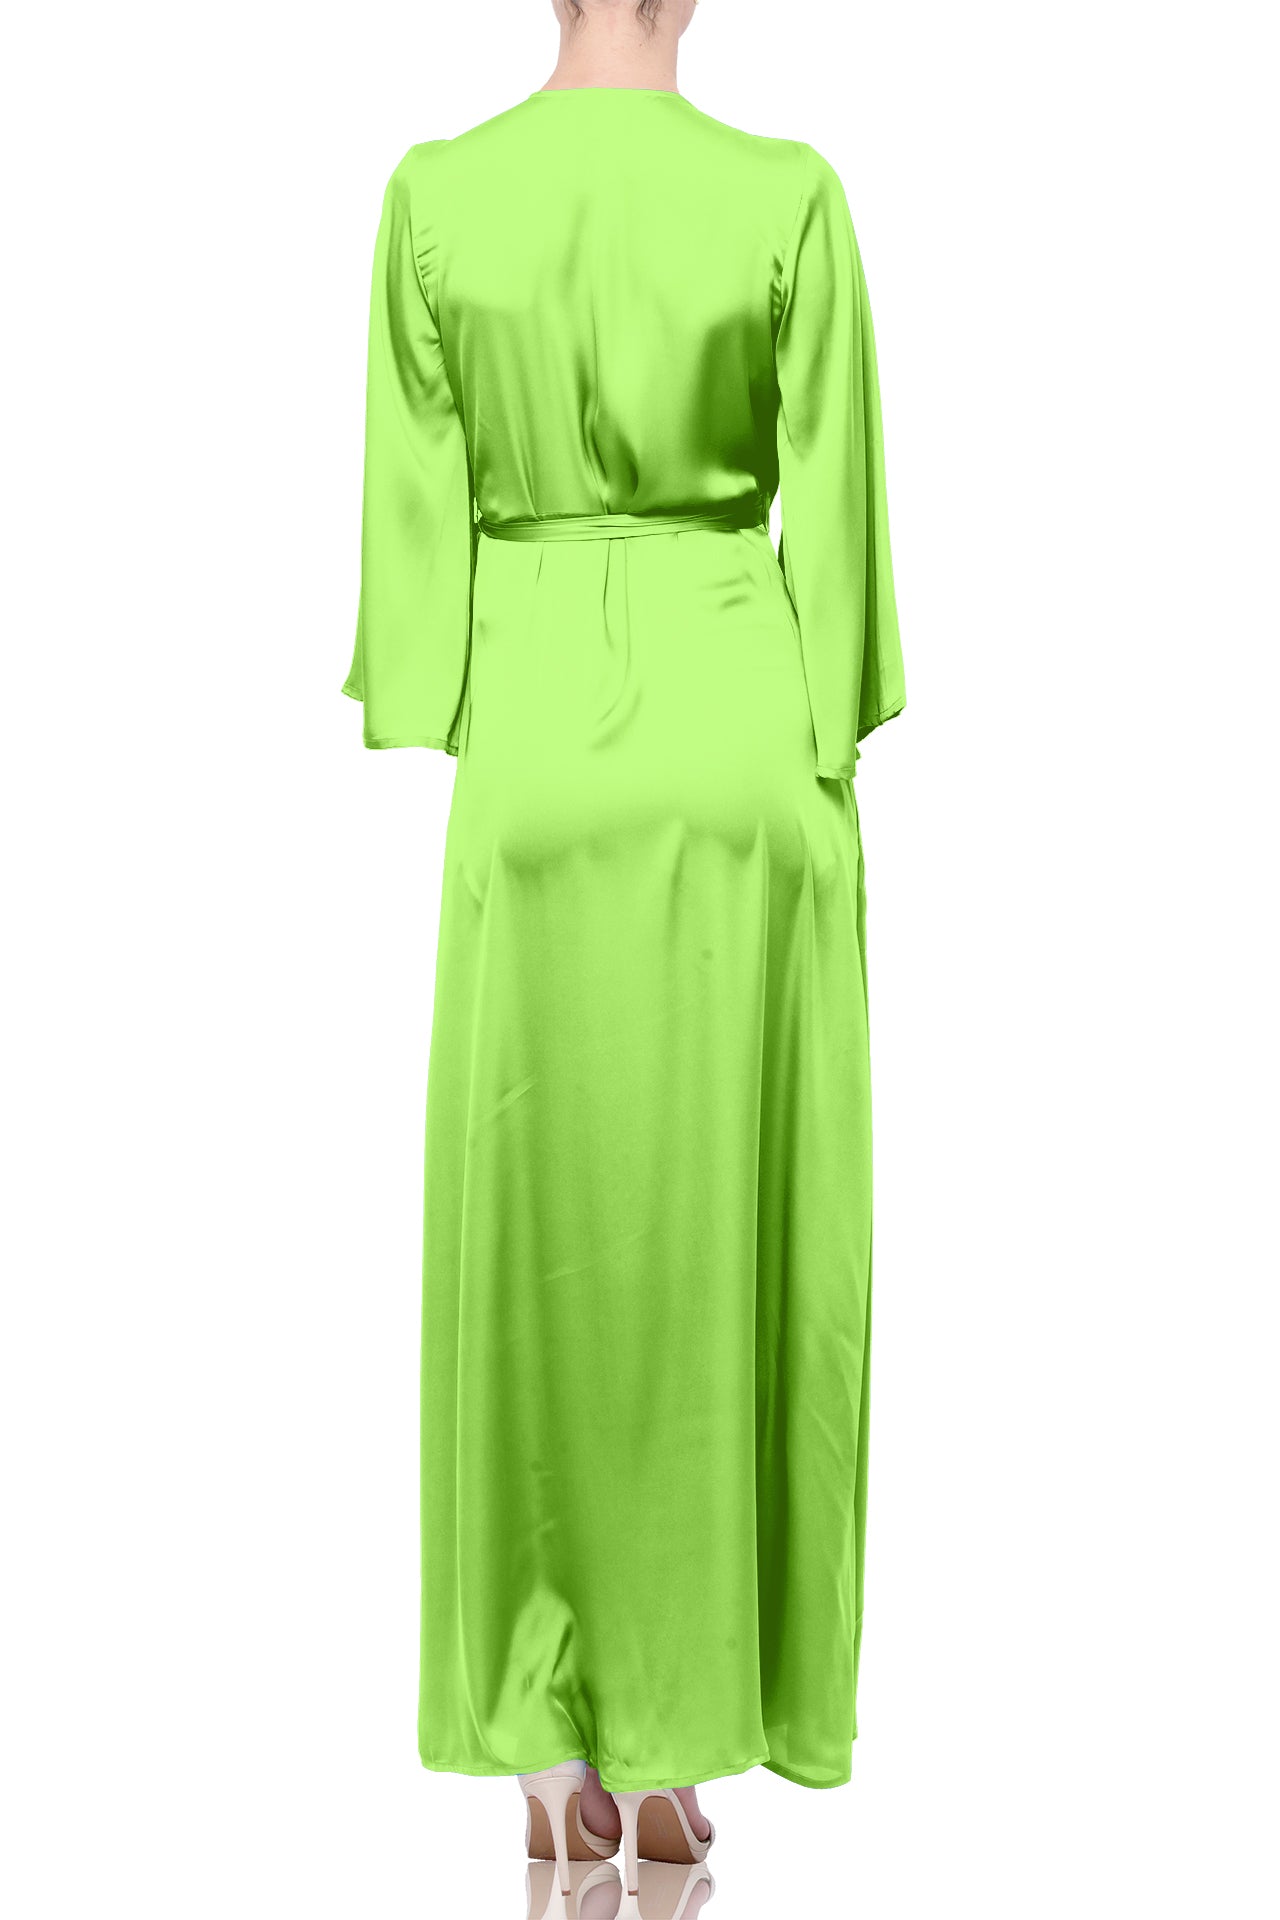 Sharp Green Designer Full Sleeve Long Maxi Dress